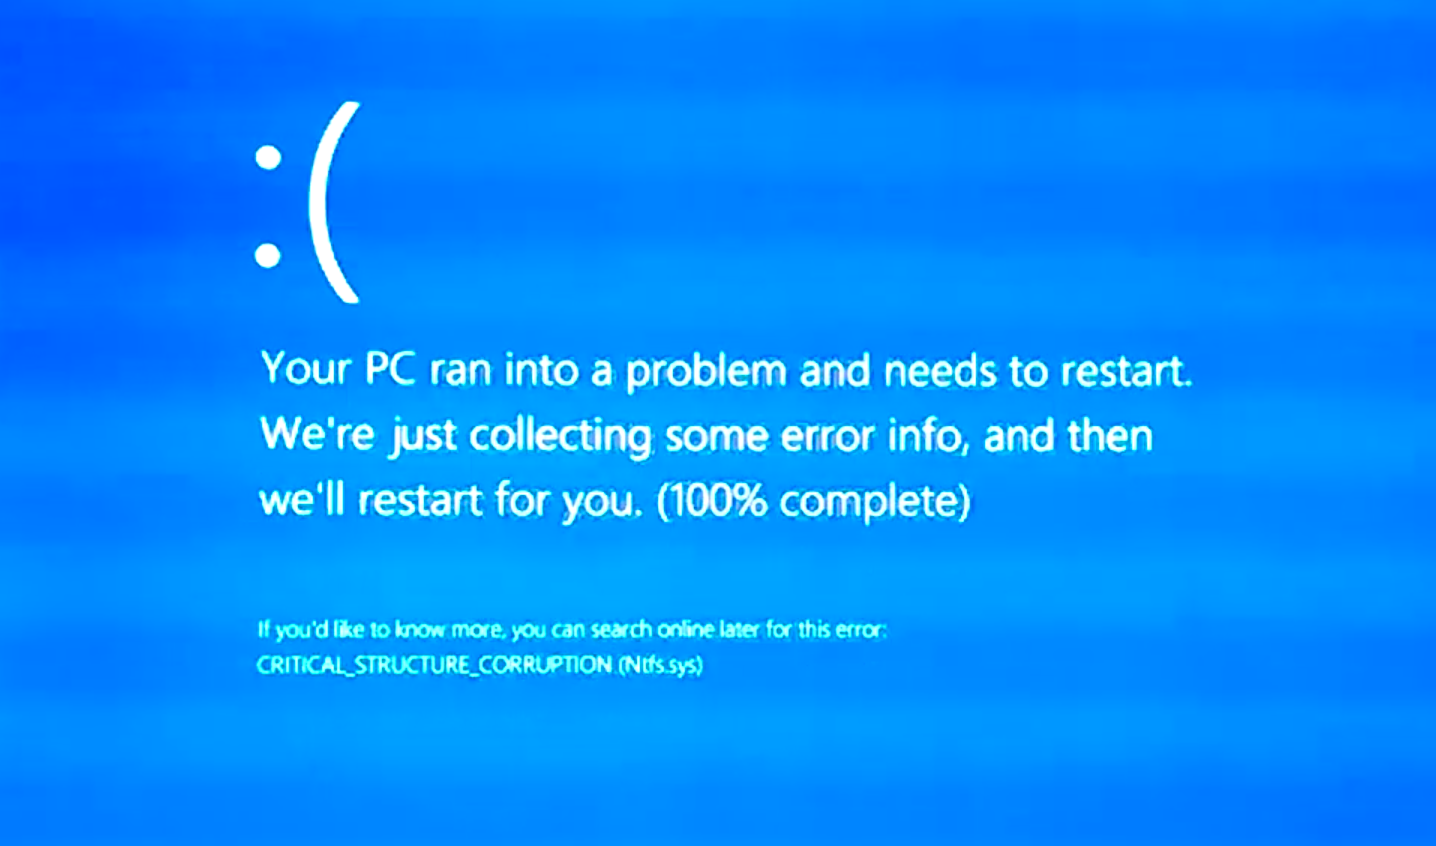 Был синий экран смерти. Экран смерти виндовс 8.1. Синий экран смерти виндовс 10. Синий экран смерти Windows 11. Синий экран смерти виндовс 8.1.